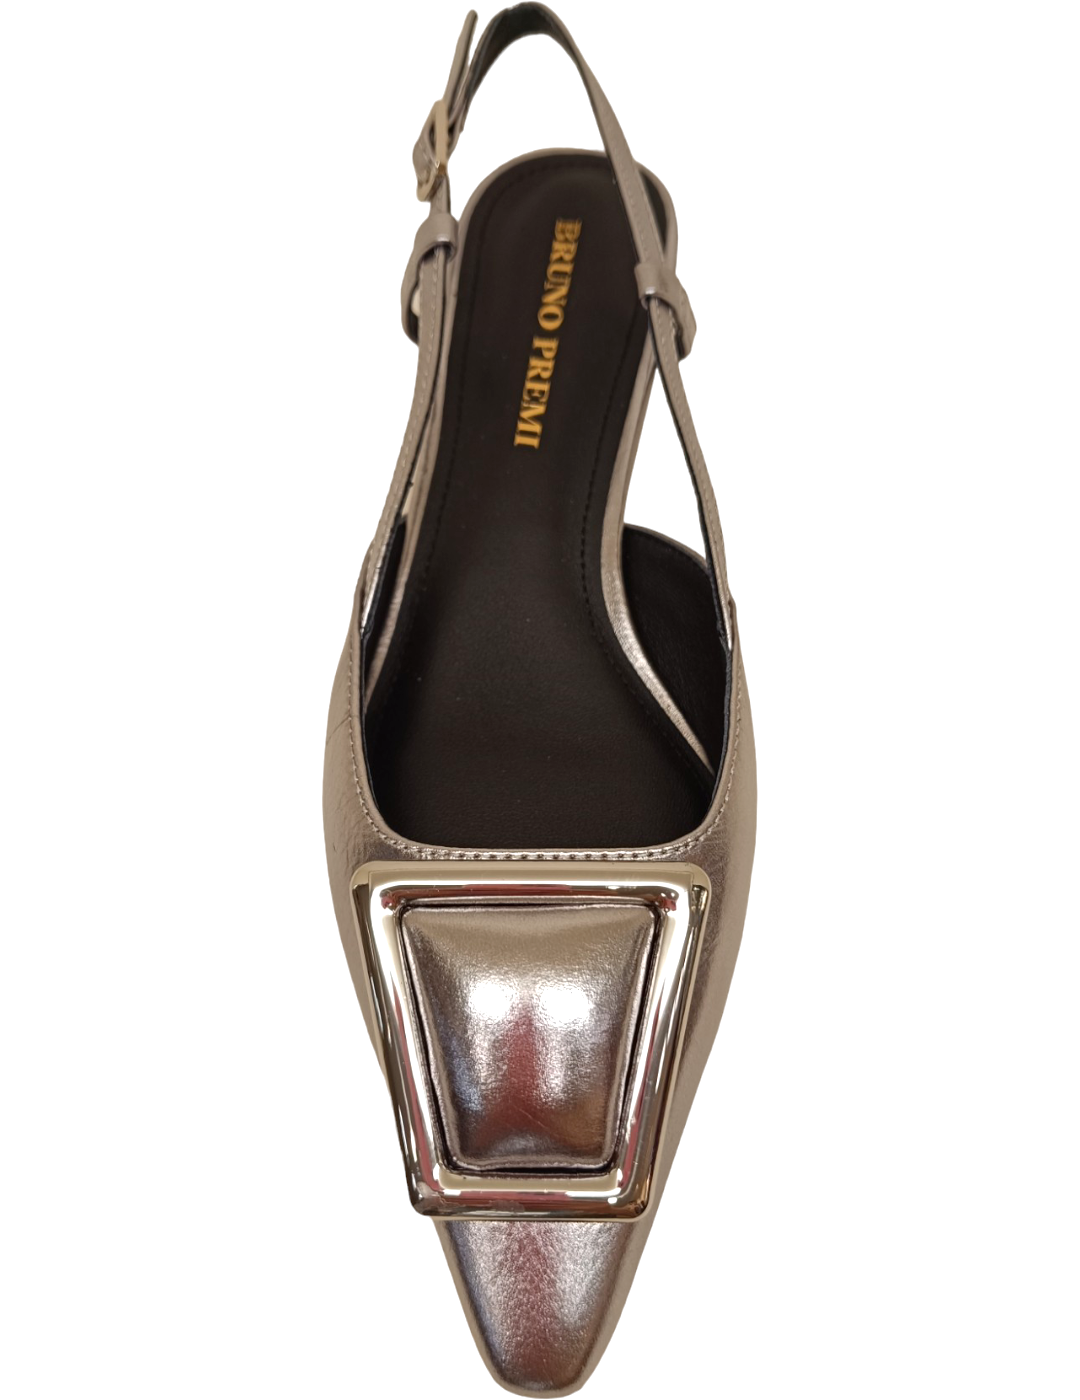 Zapato sling back bh0102 bruno acciaio